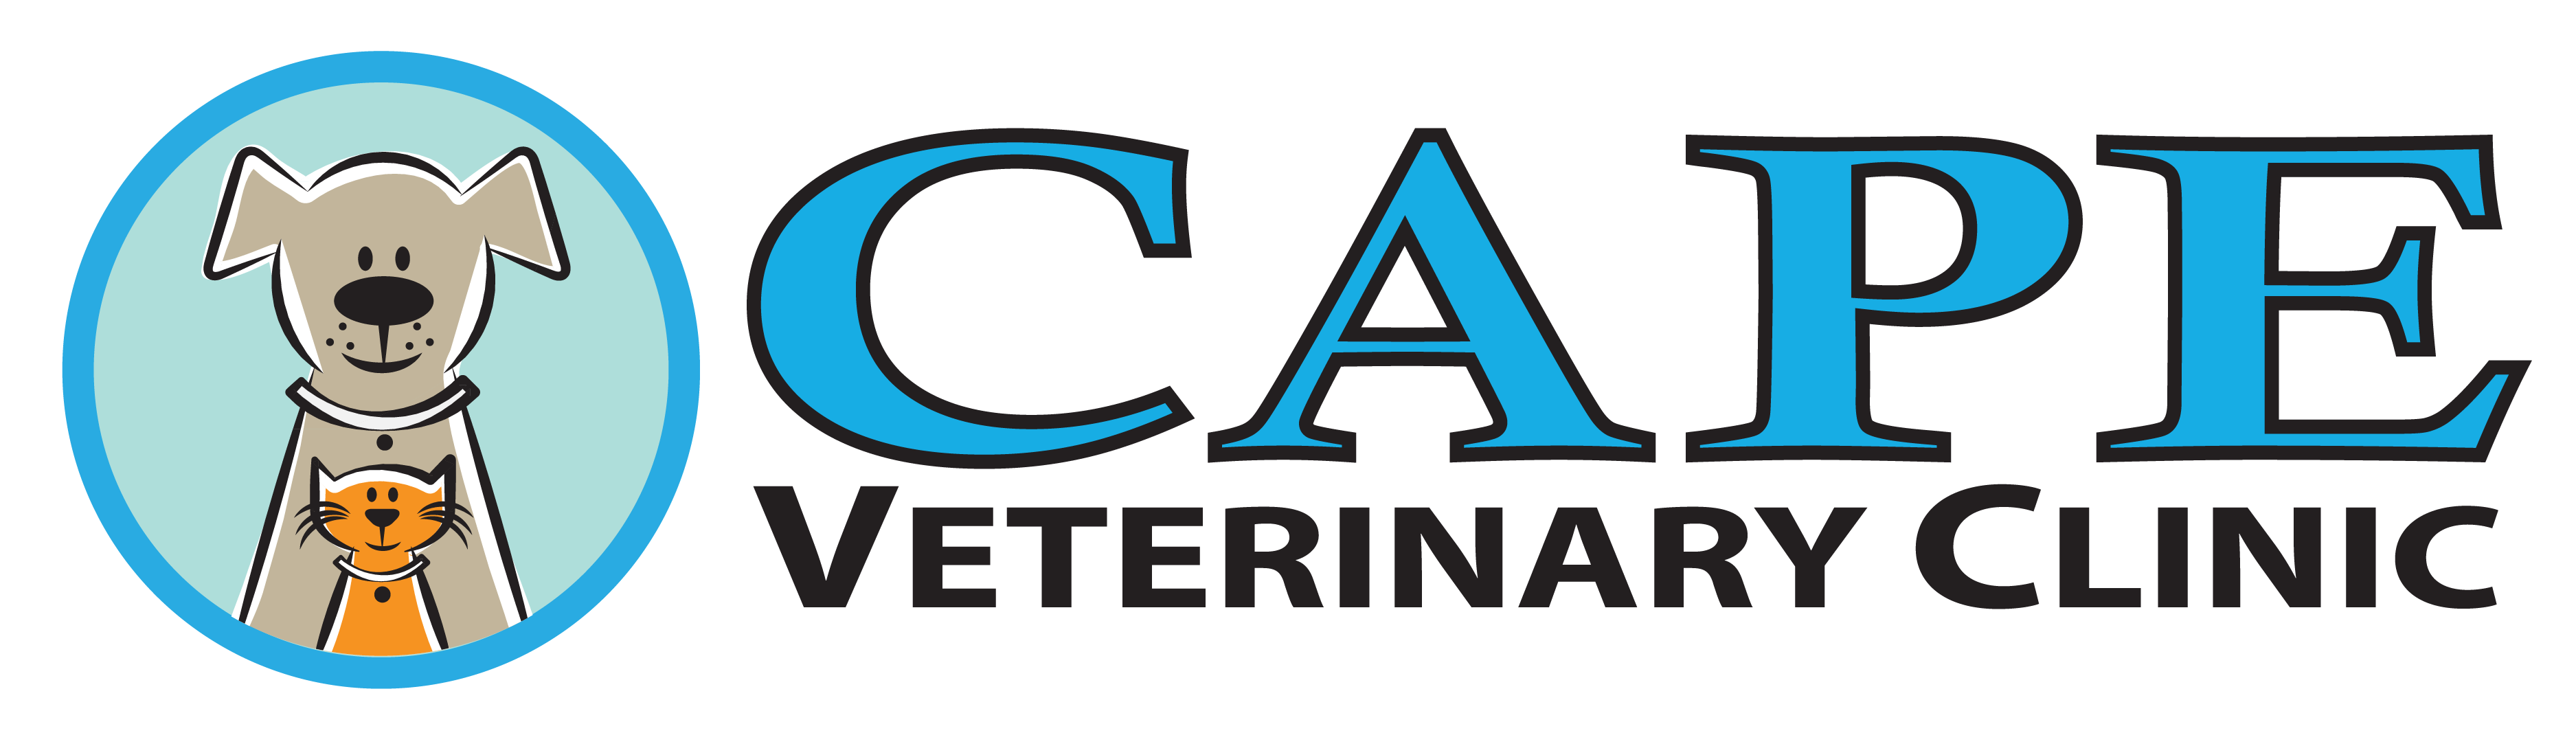 Cape Veterinary Clinic logo